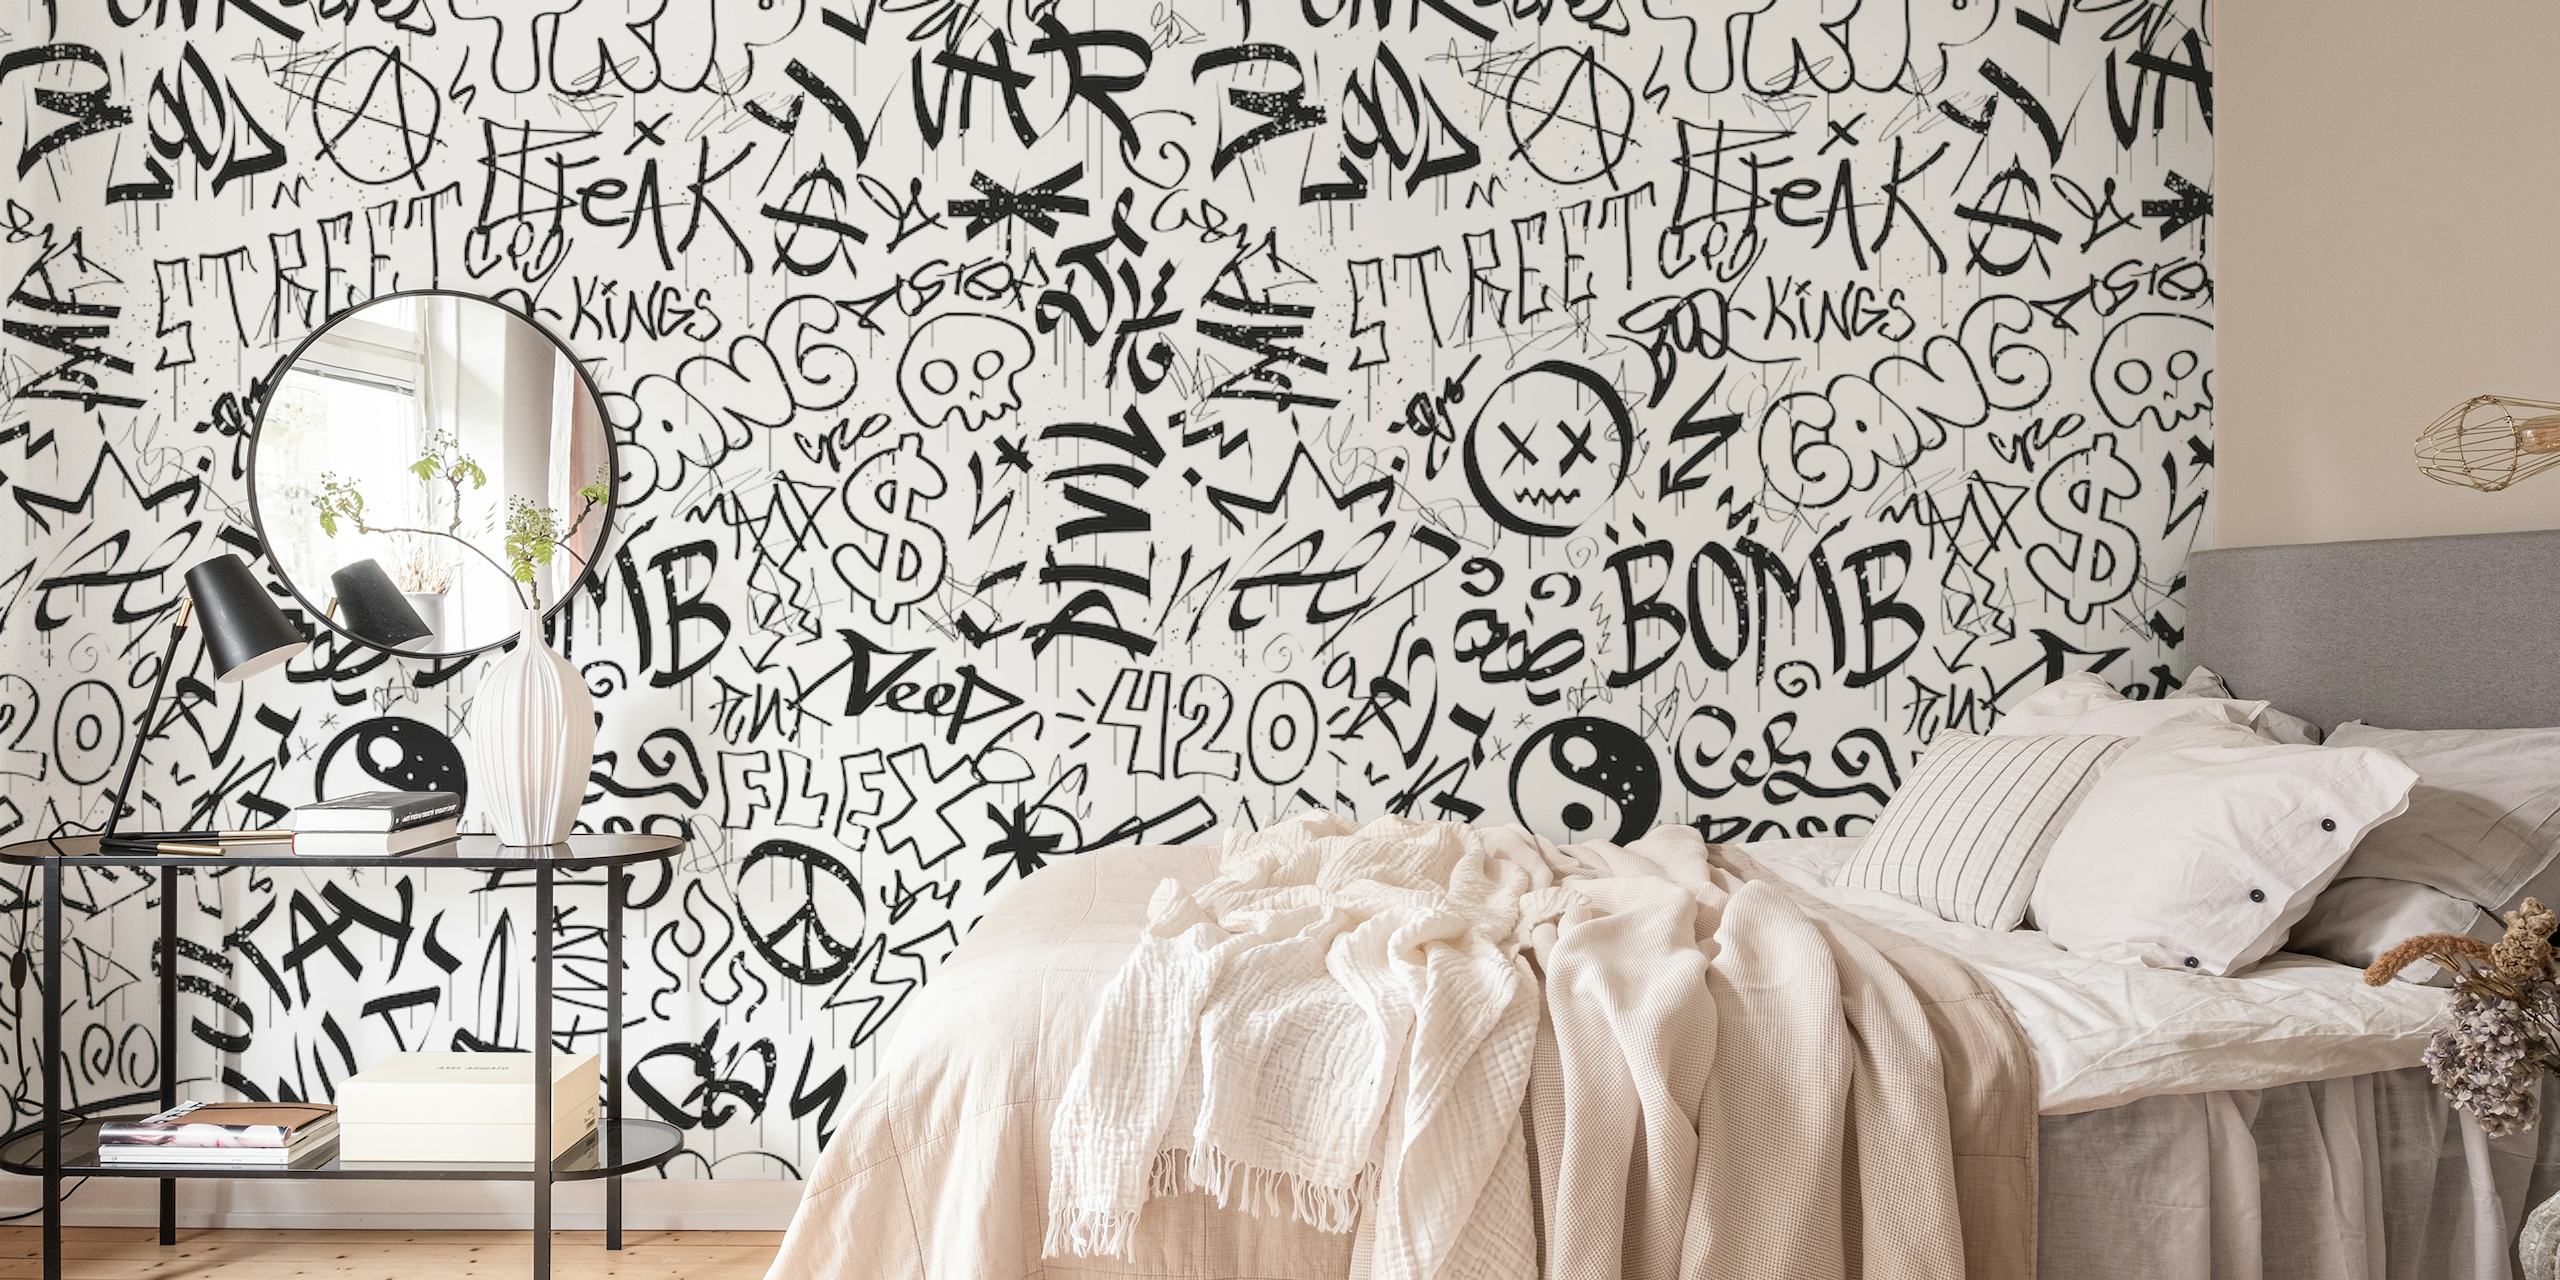 Fotomural estilo graffiti en blanco y negro con varias etiquetas y personajes.